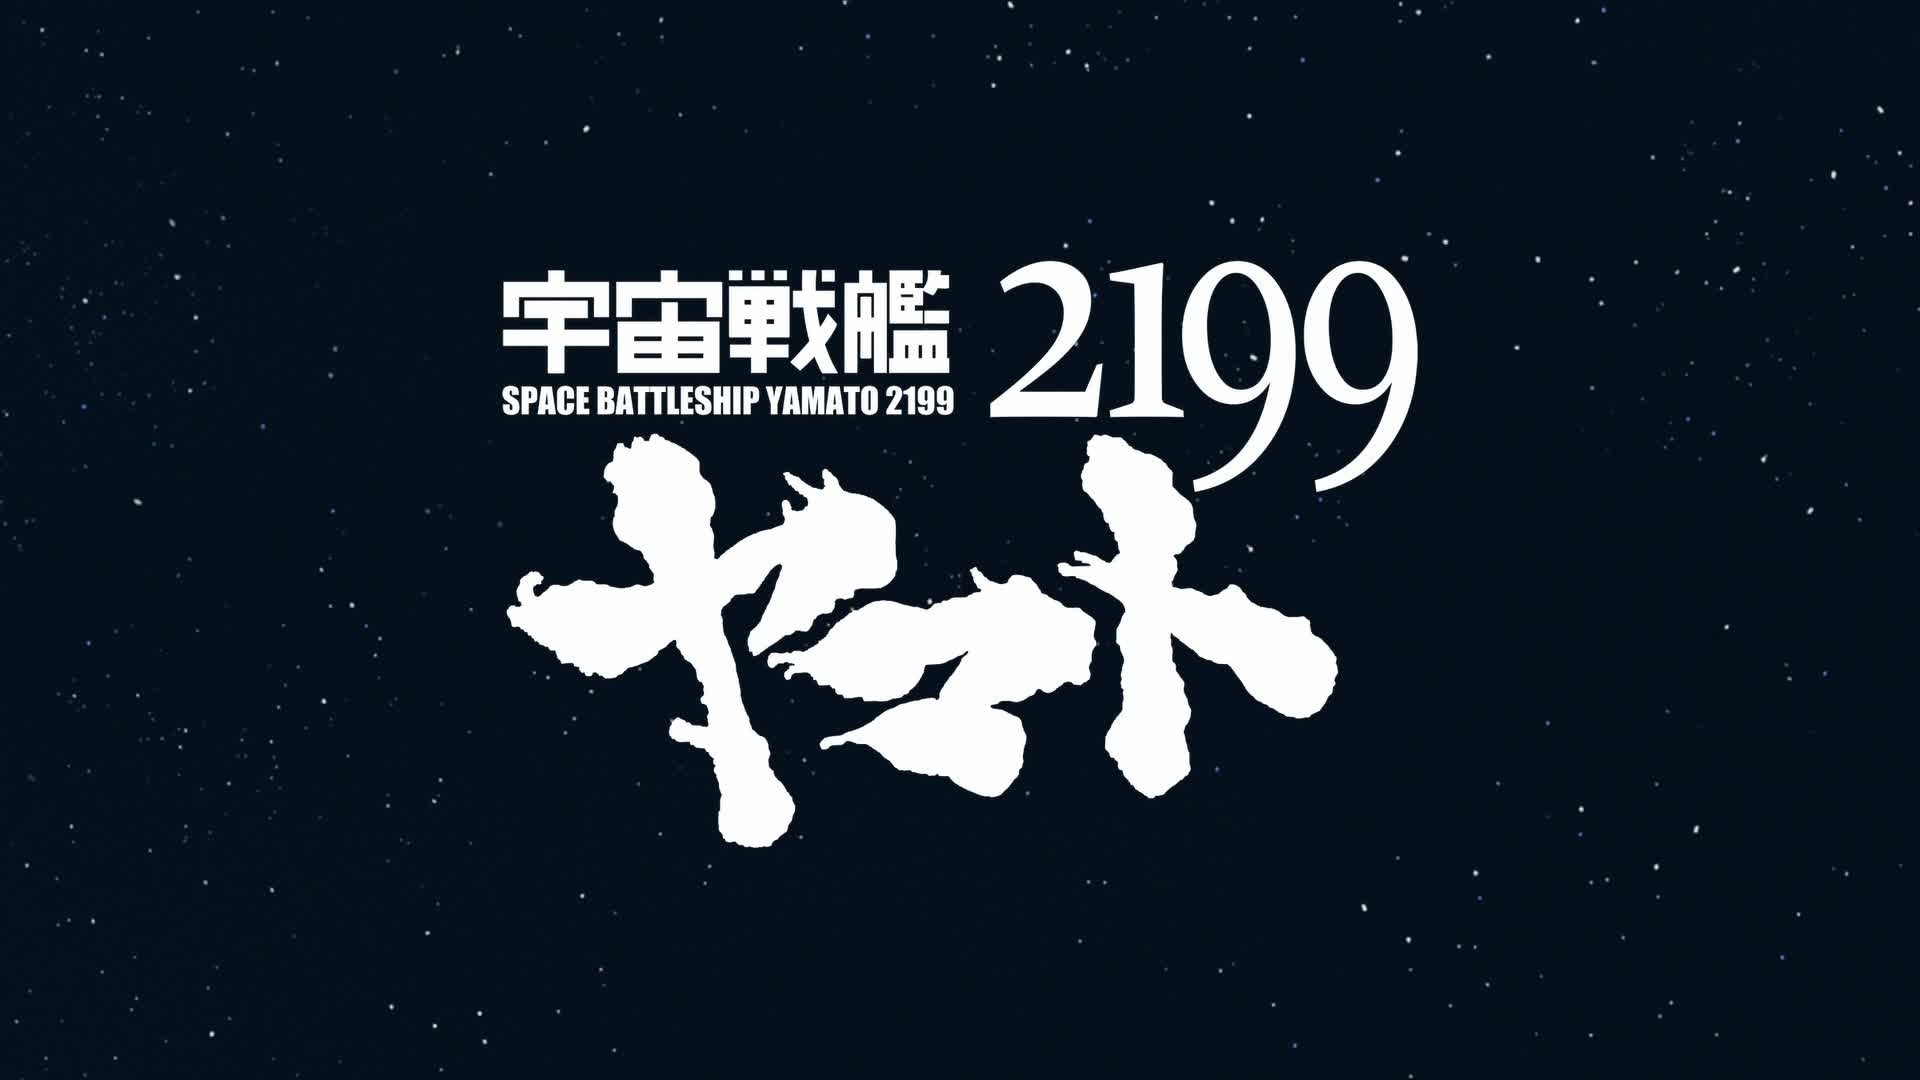 ソーシャルゲーム 宇宙戦艦ヤマト2199 イスカンダルへの旅路 をヤマダゲームにて配信開始 アイデアビューロー株式会社のプレスリリース